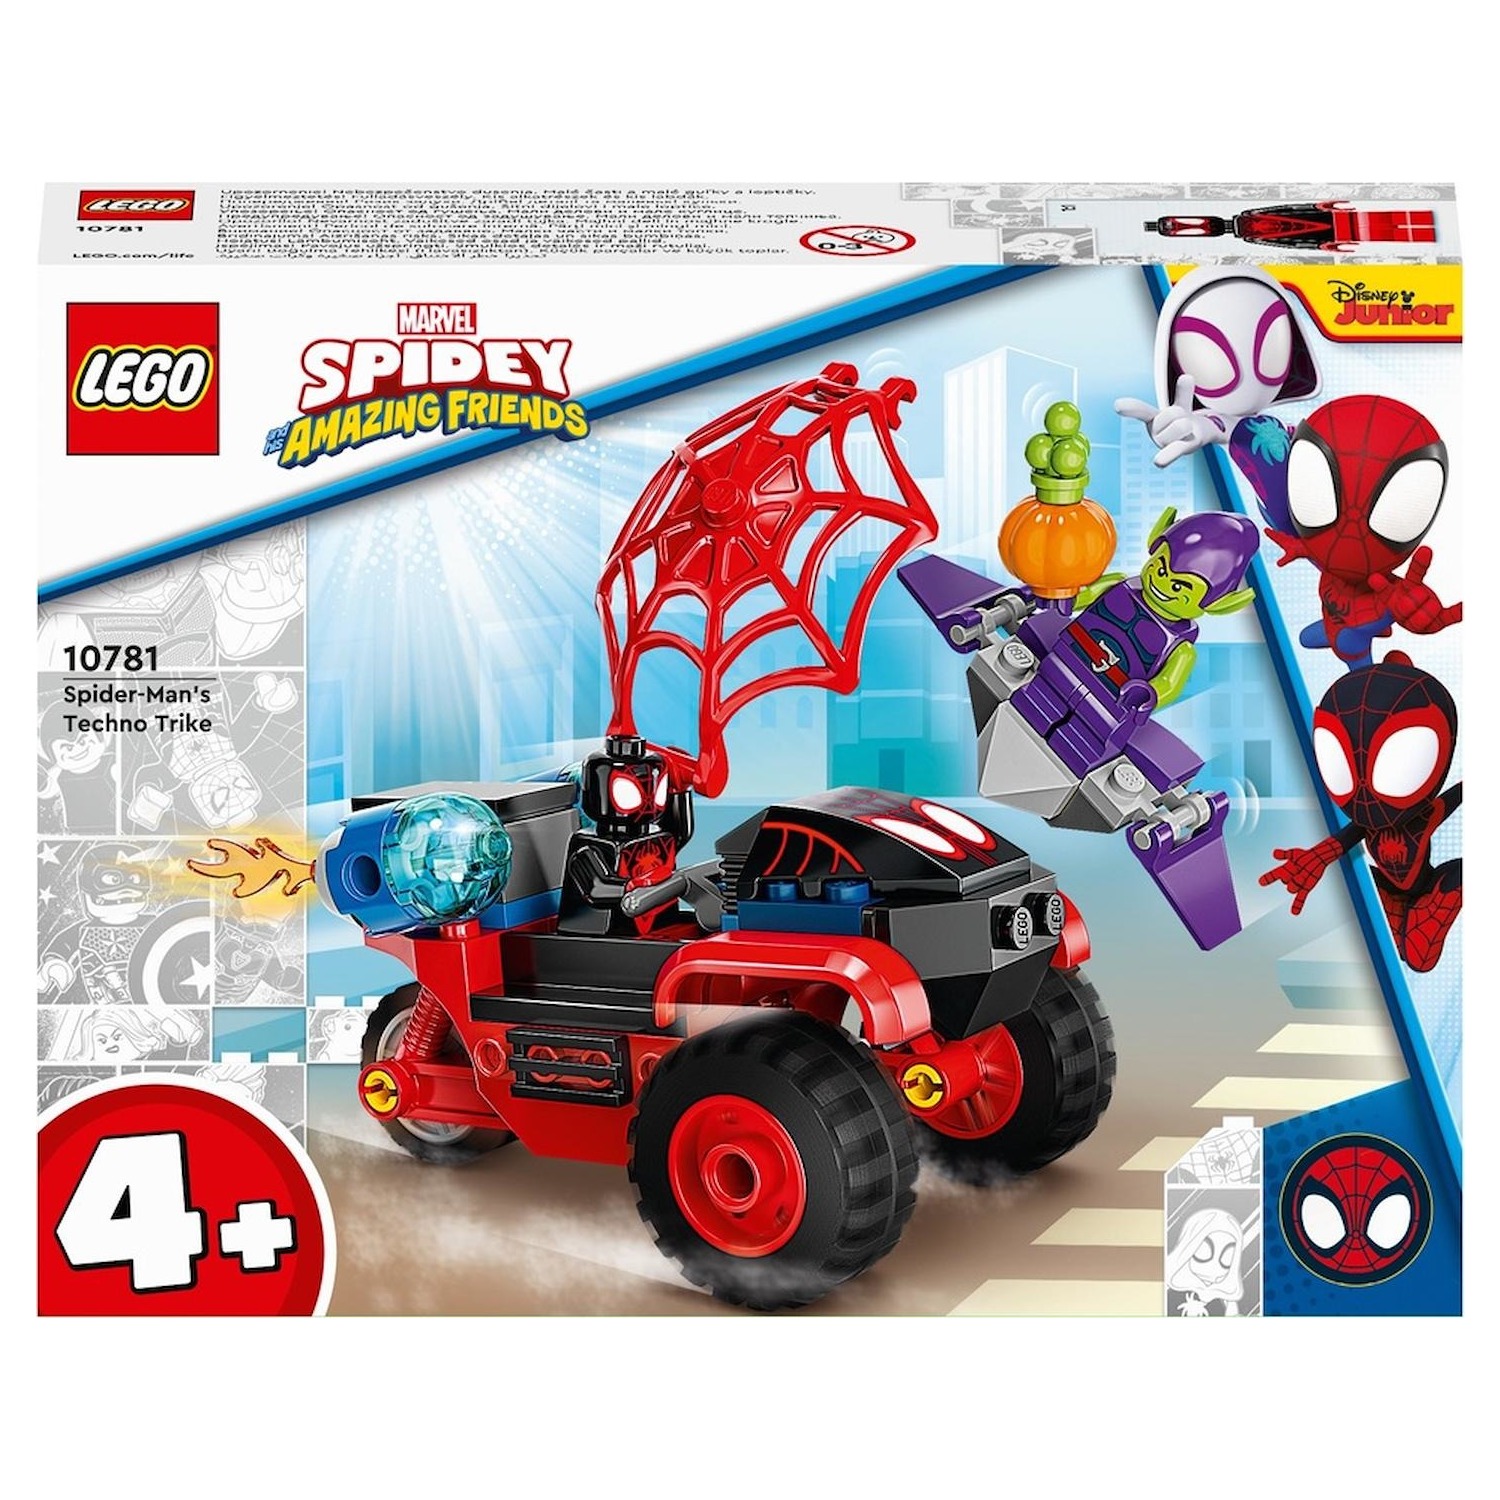 Immagine per Lego Spidey Miles Morales: la Techno Trike di Spider-Man da DIMOStore